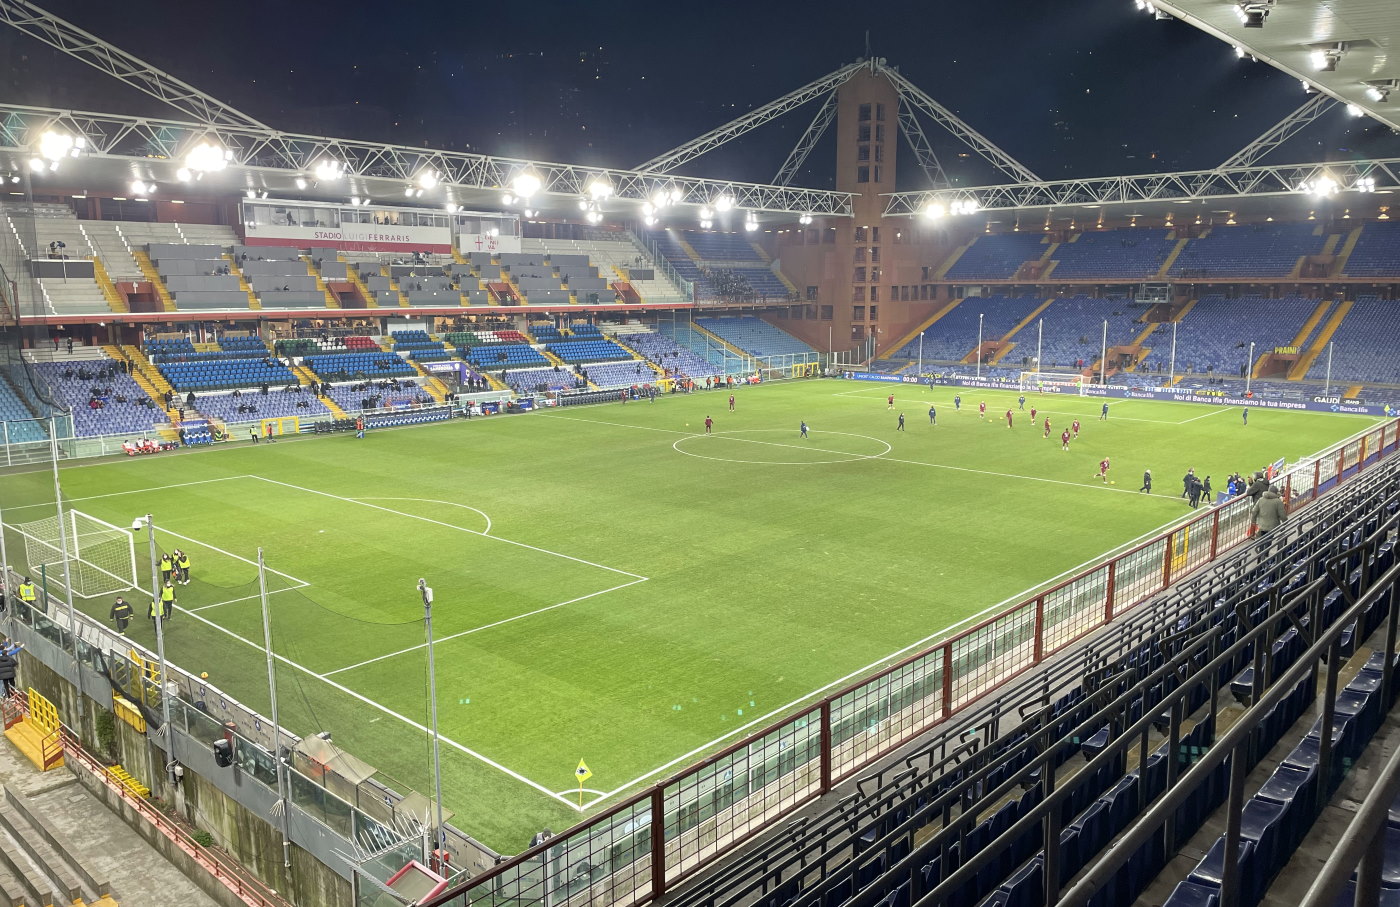 Genoa x Juventus - Palpite da Serie A TIM 23/24 - 15/12